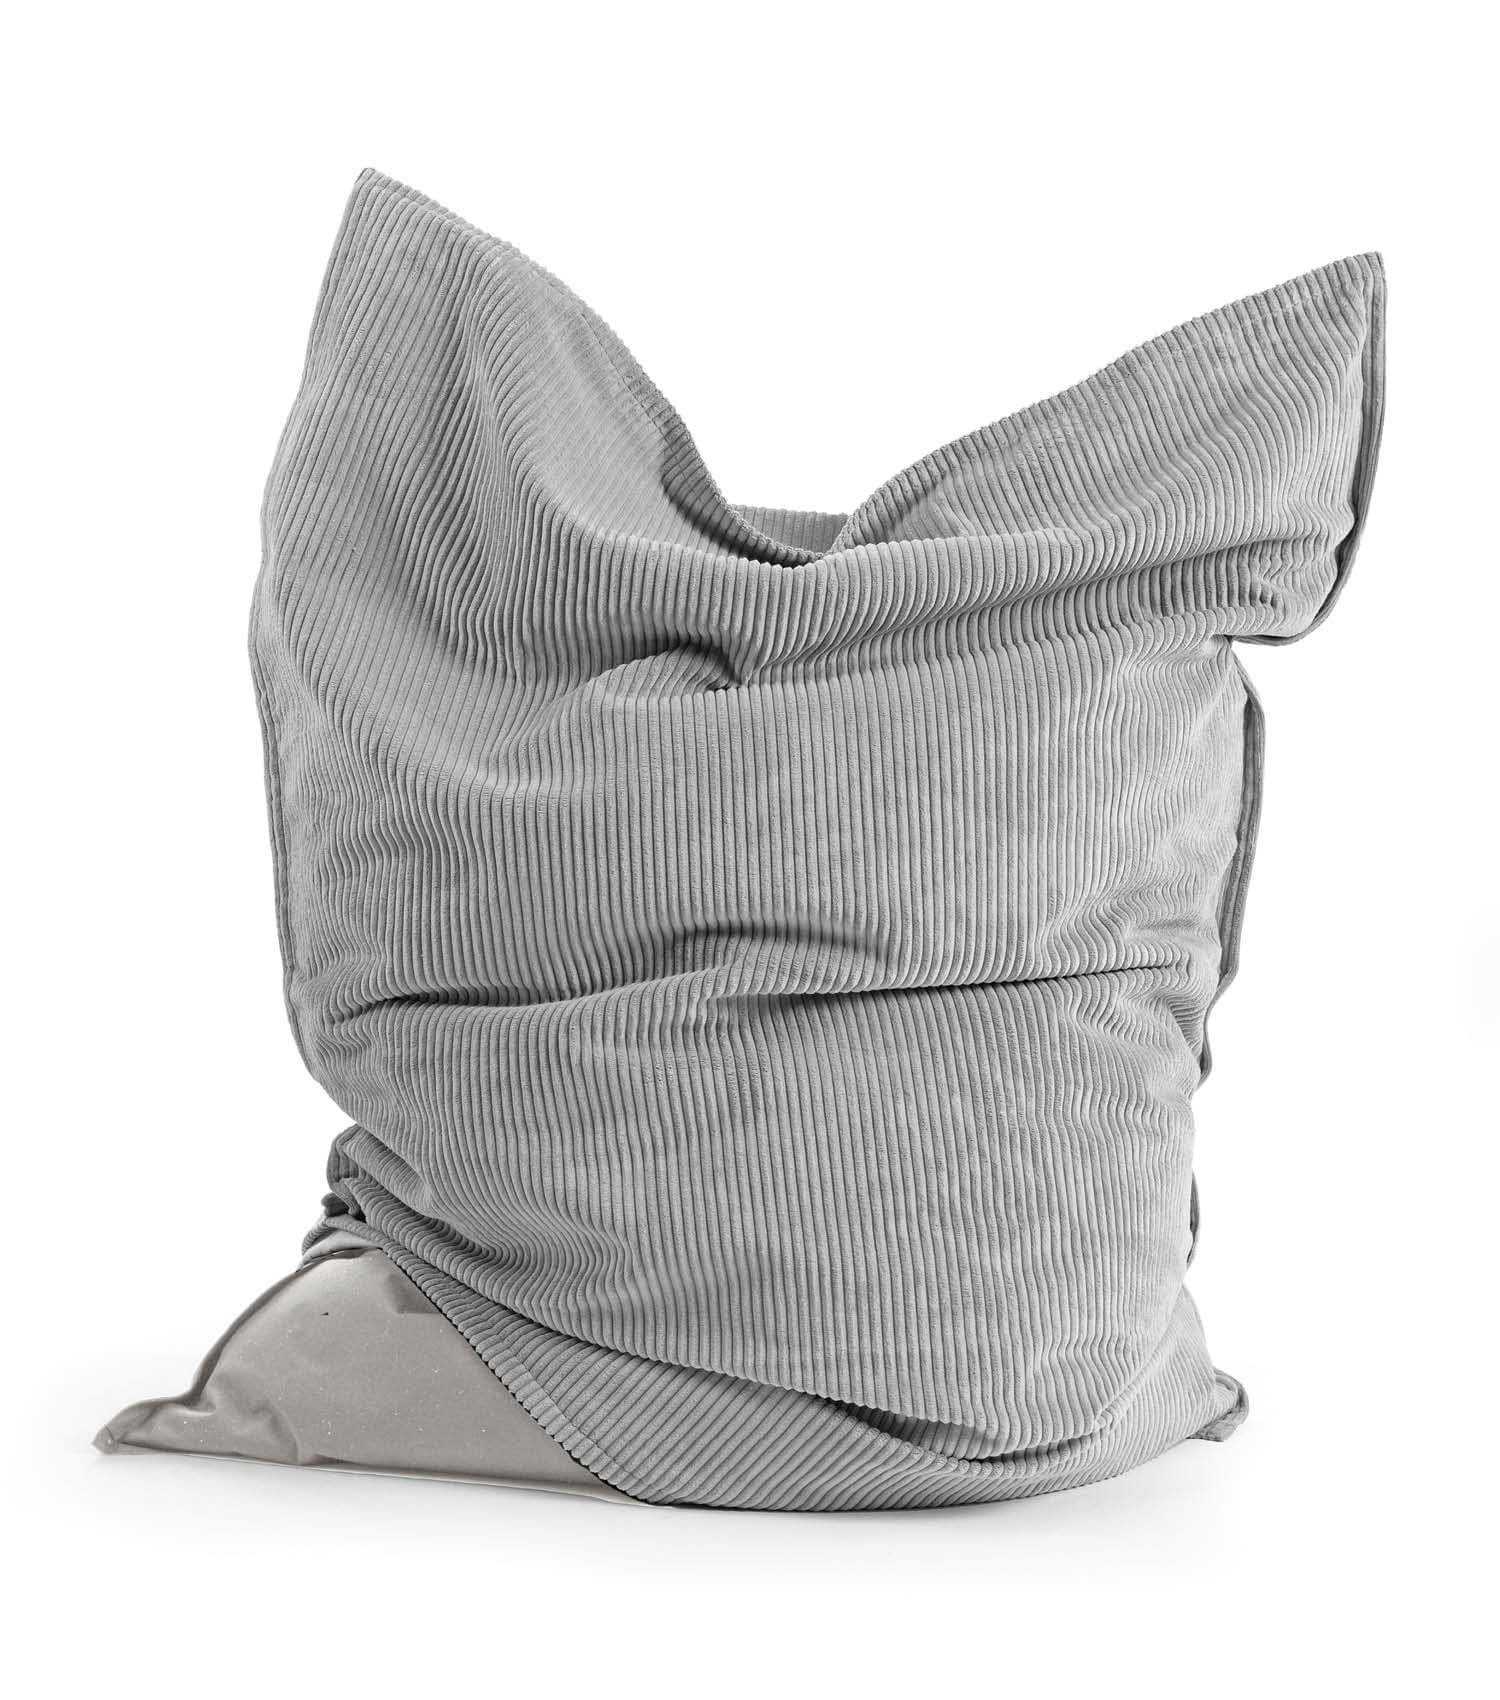 Bodenkissen oder (mit Grau Cord Sitzsack Cover), Der Bag in mokebo Cord Bean Große mit Riesensitzsack Bezug,